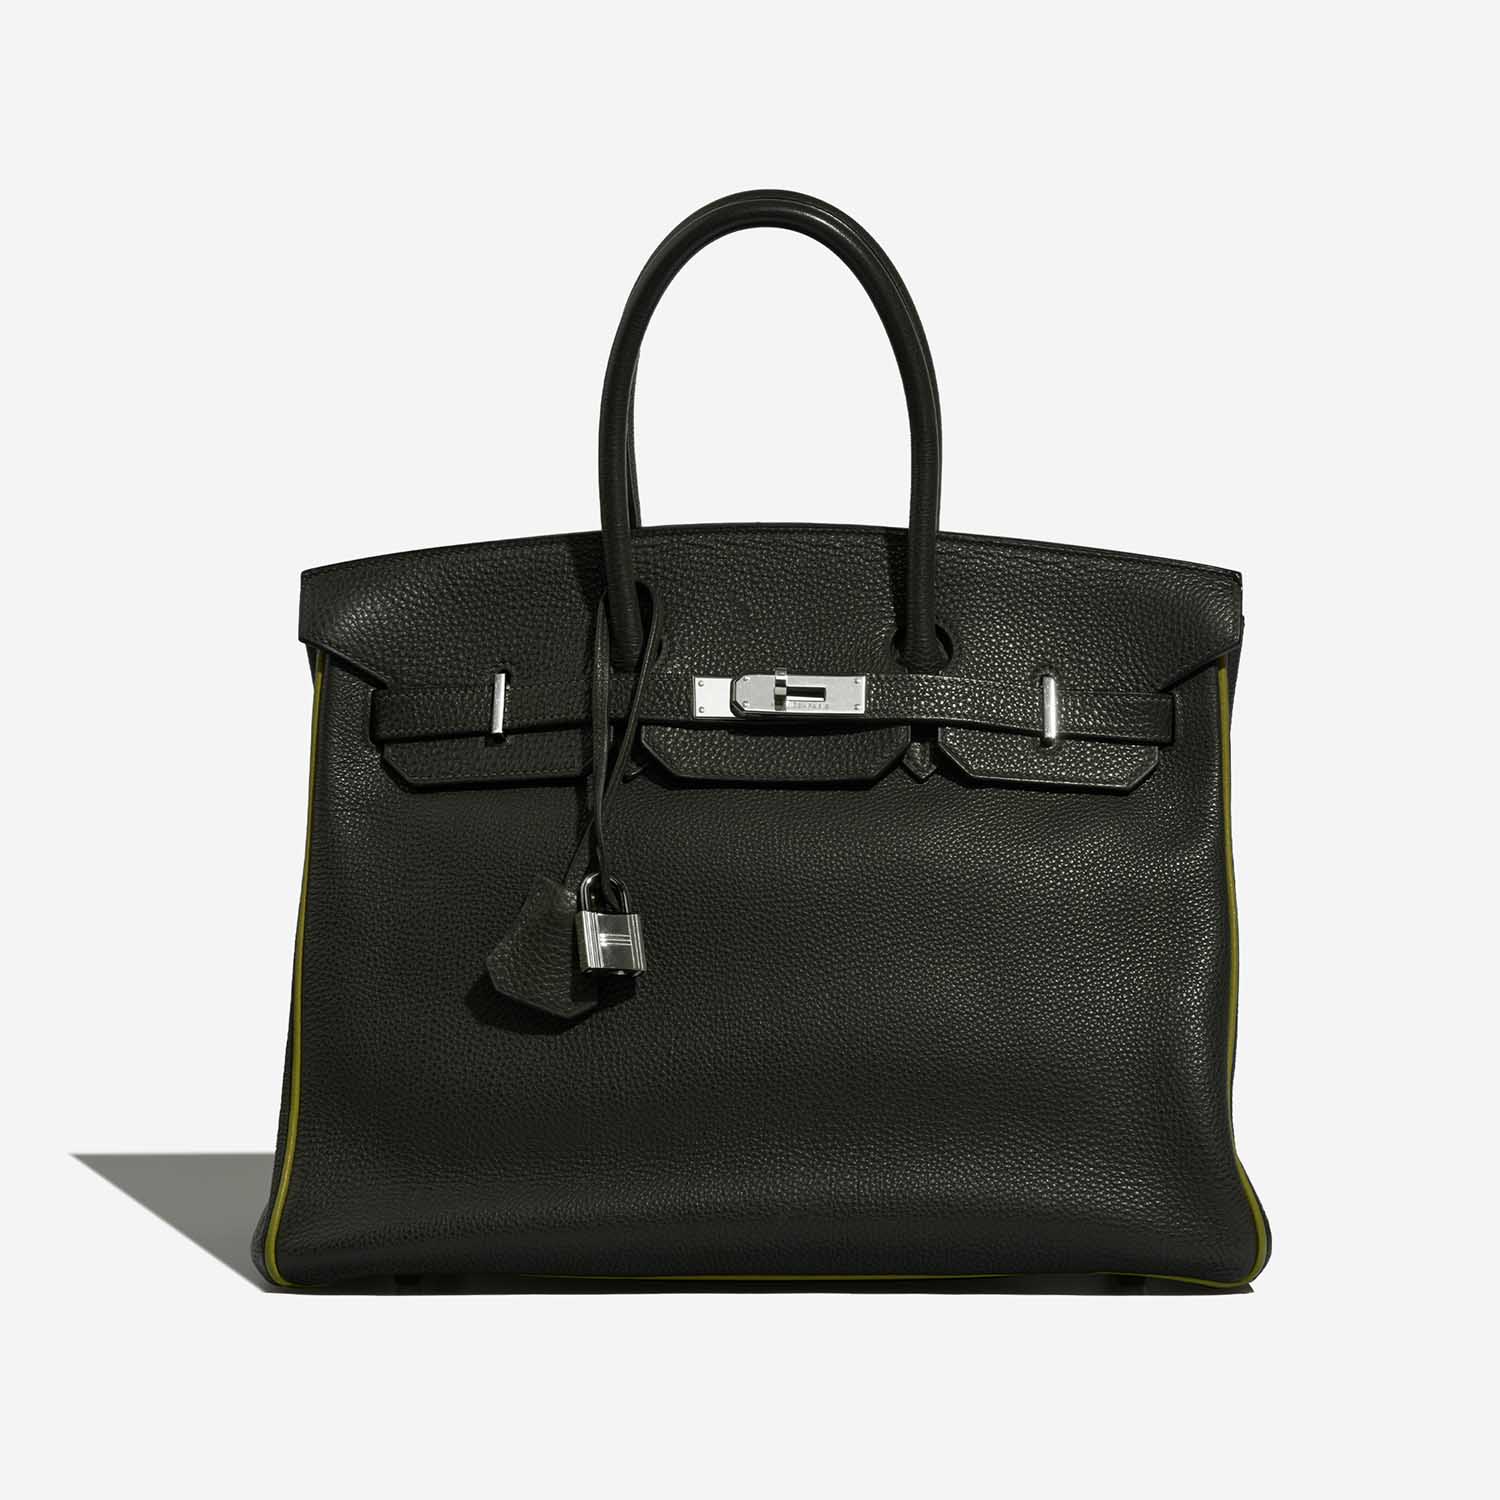 Hermès Birkin 35 VertFonce-VertChartreuse-VertAnis Front | Verkaufen Sie Ihre Designer-Tasche auf Saclab.com